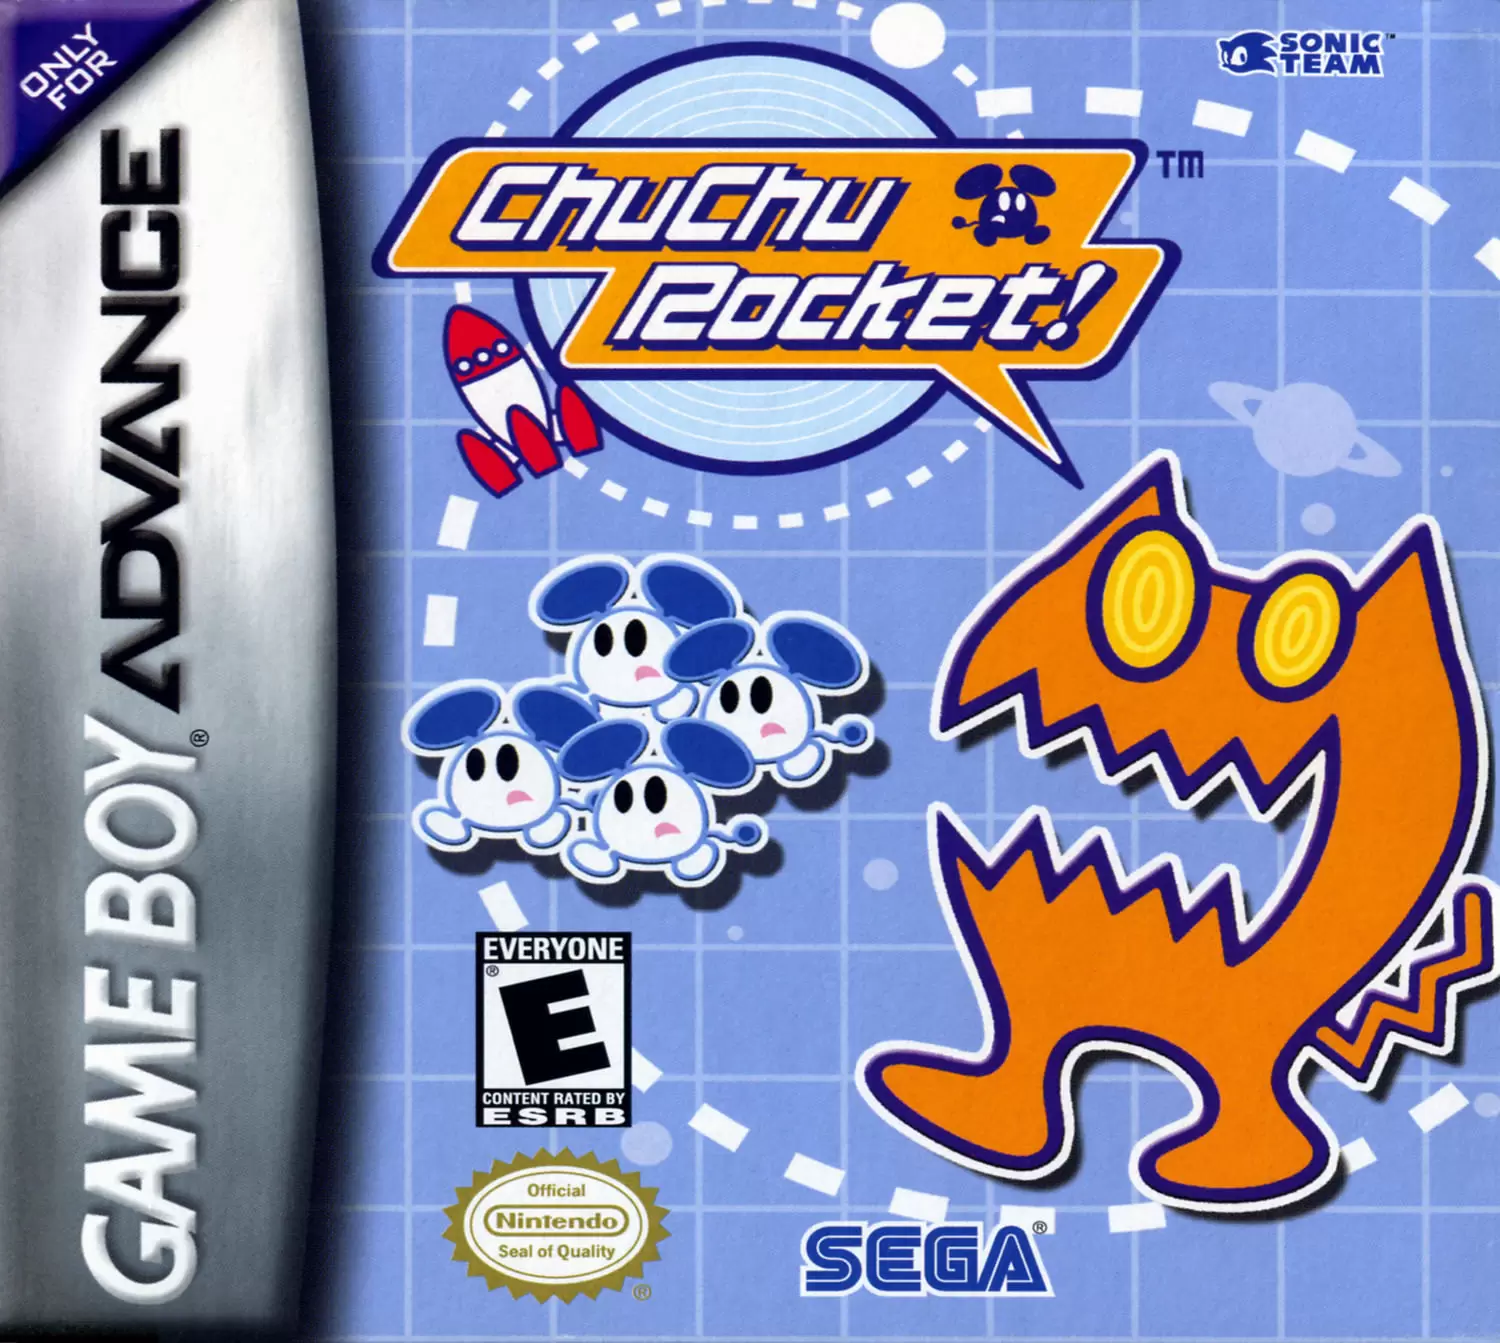 Game Boy Advance Games - ChuChu Rocket!